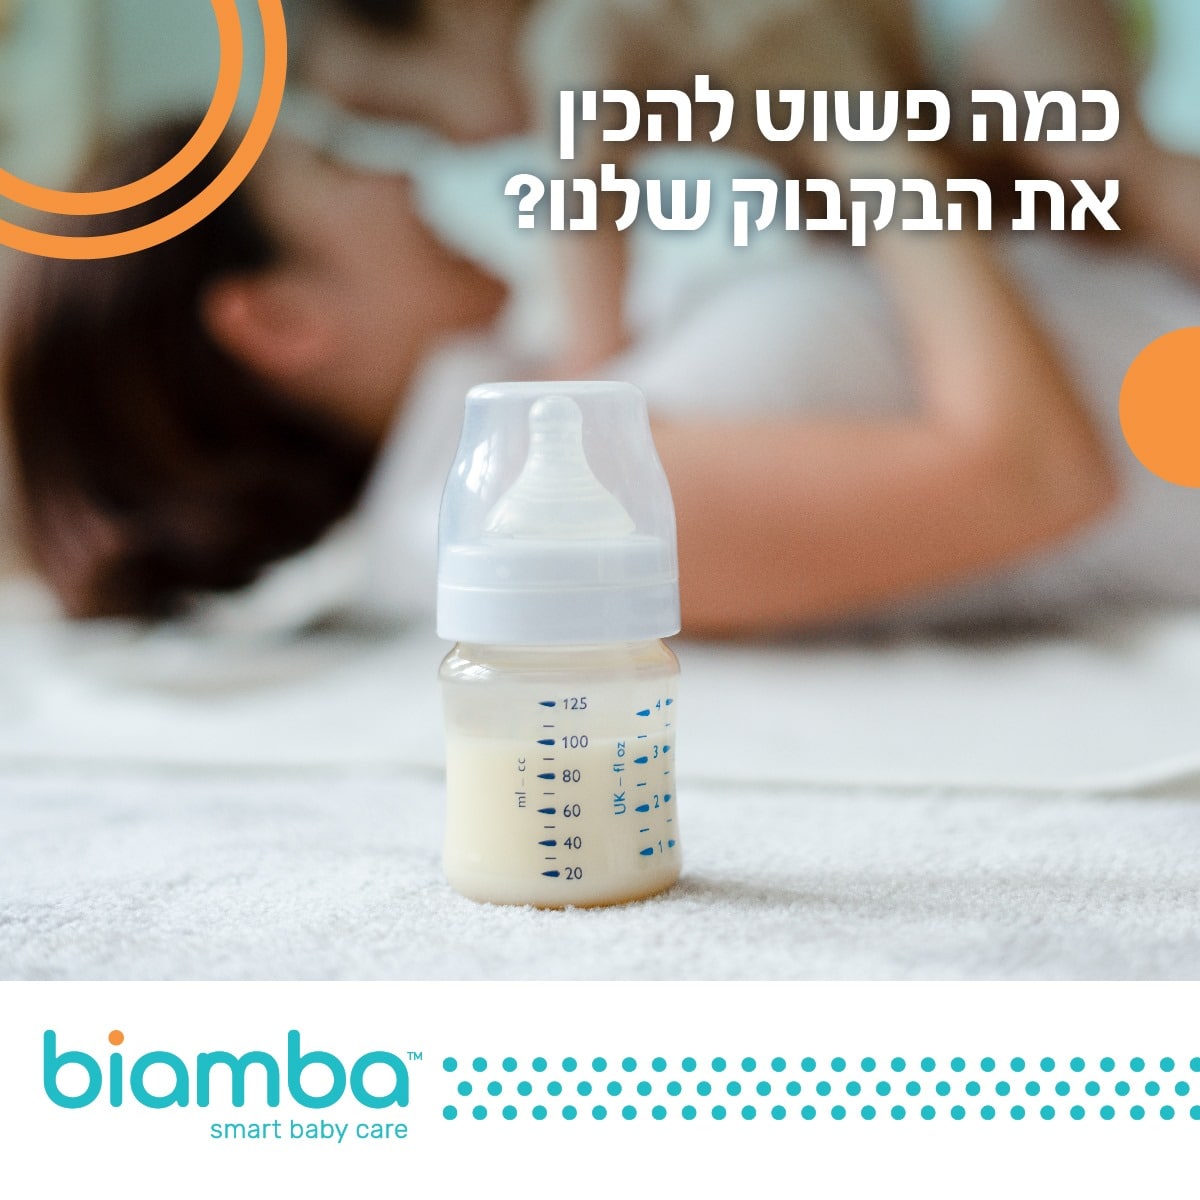 איך מכינים את הבקבוק המושלם לתינוק?